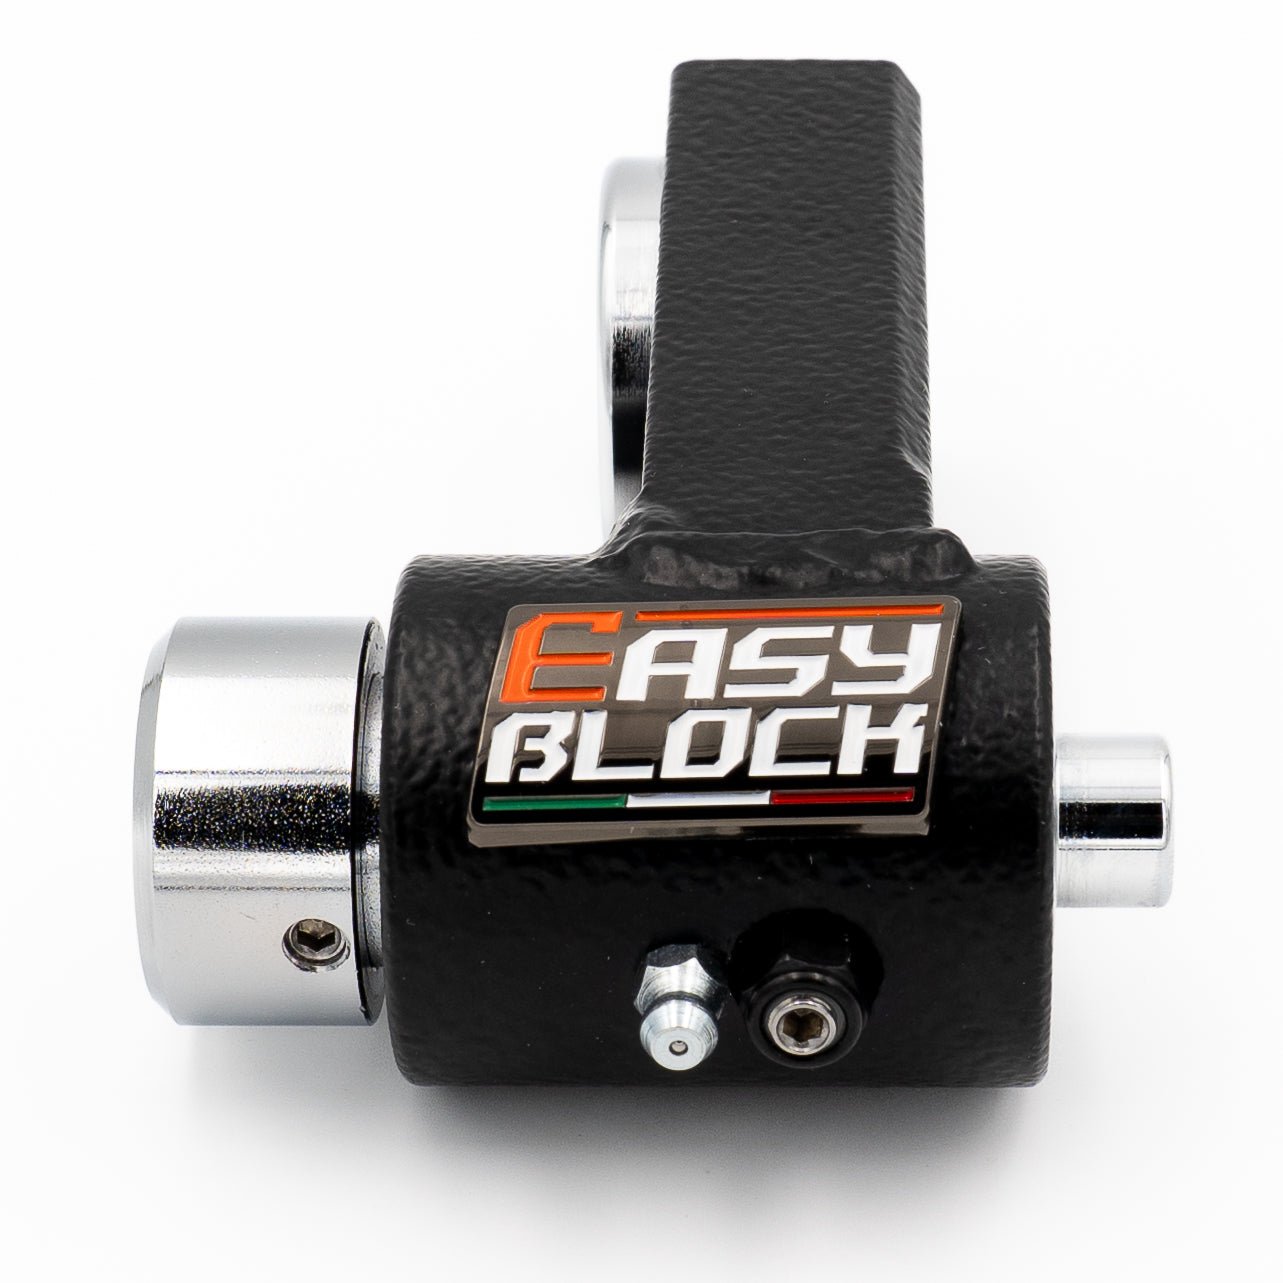 EasyBlock for Honda CB500x - Best Wheel Lock